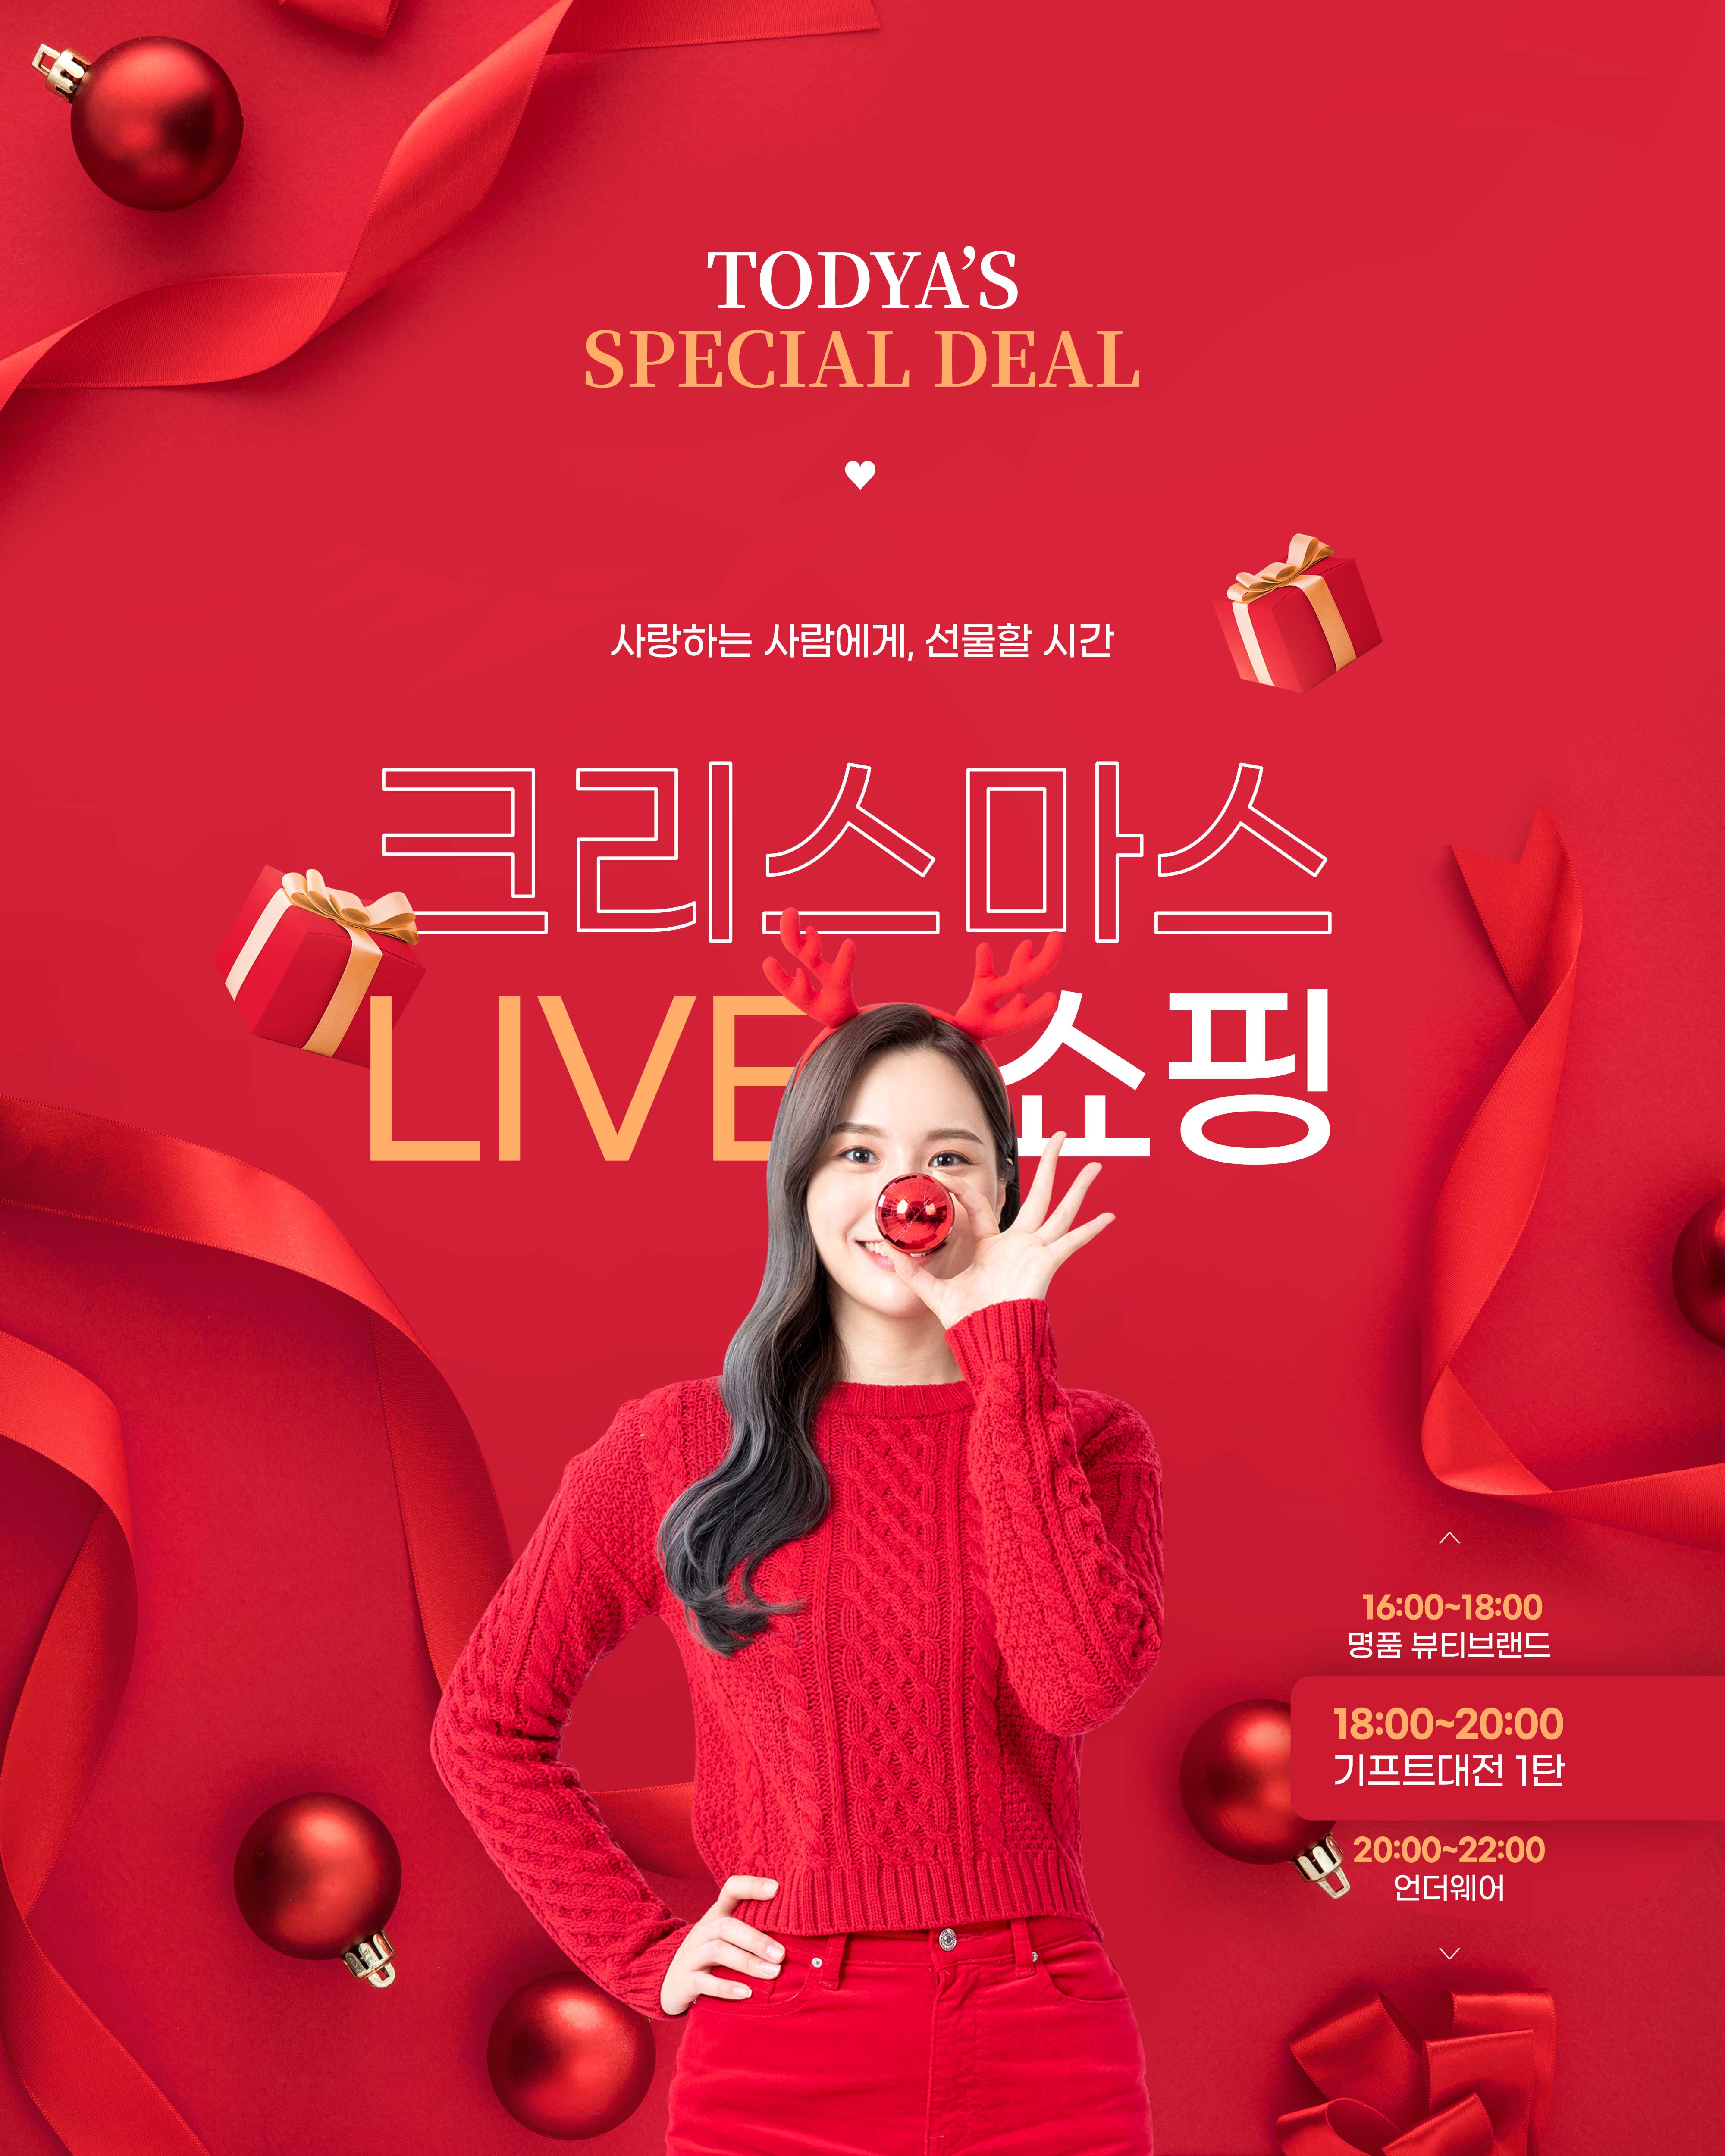 大红色经典圣诞礼品促销海报设计韩国素材设计素材模板